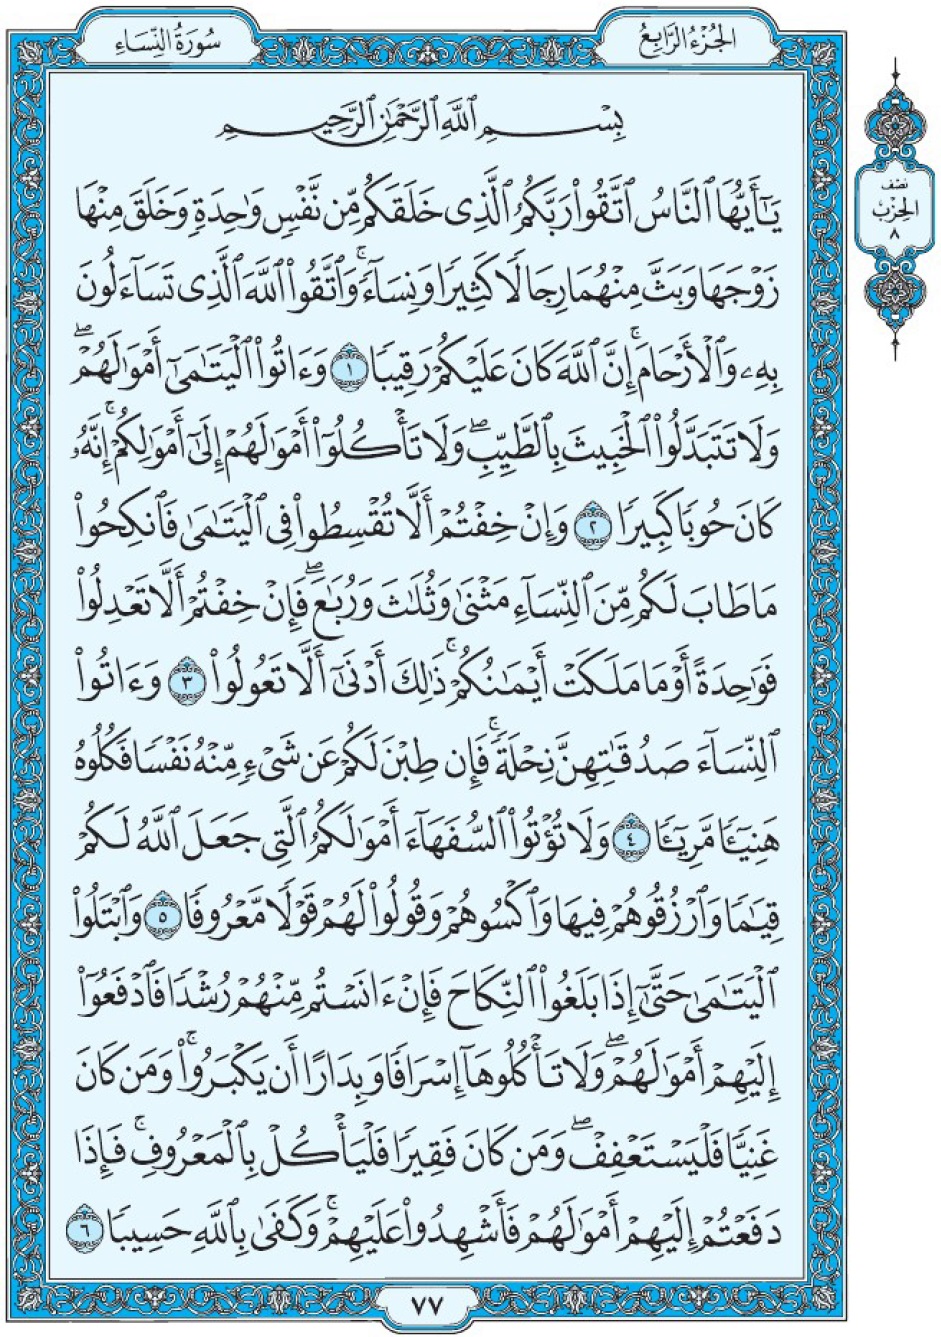 Коран Мединский мусхаф страница 77, сура 4 Ан-Ниса سورة ٤ النساء 